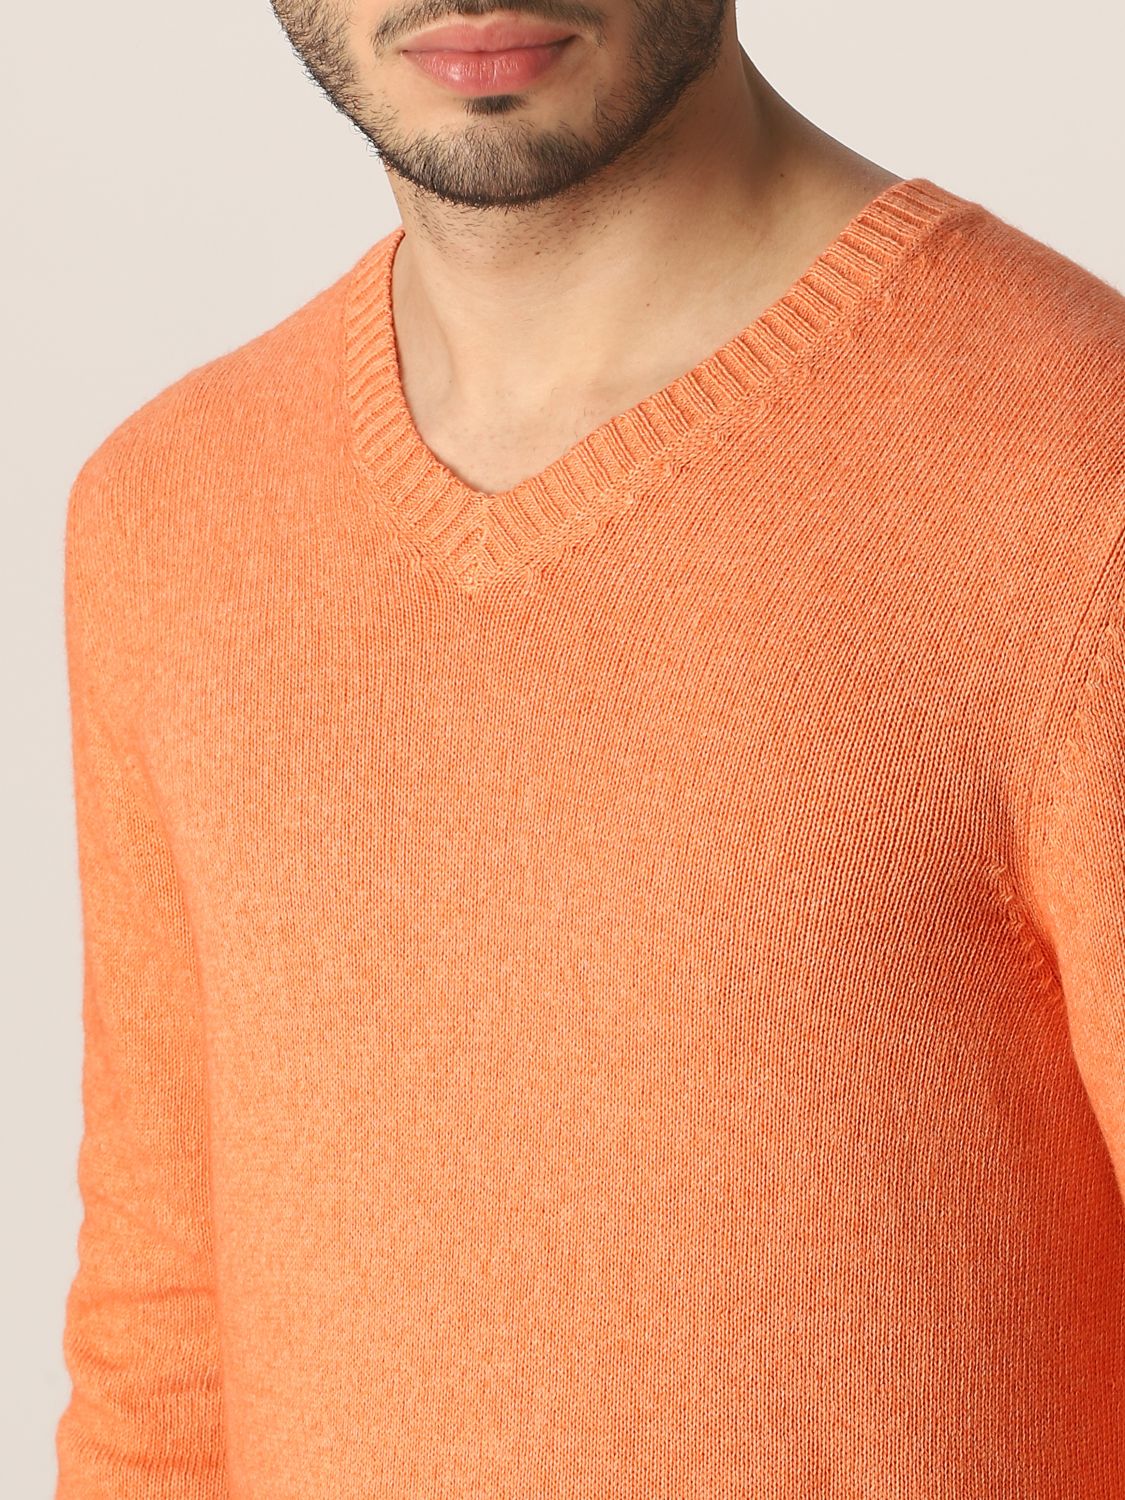 Sweater Malo: Malo sweater in cotton and cashmere orange 3